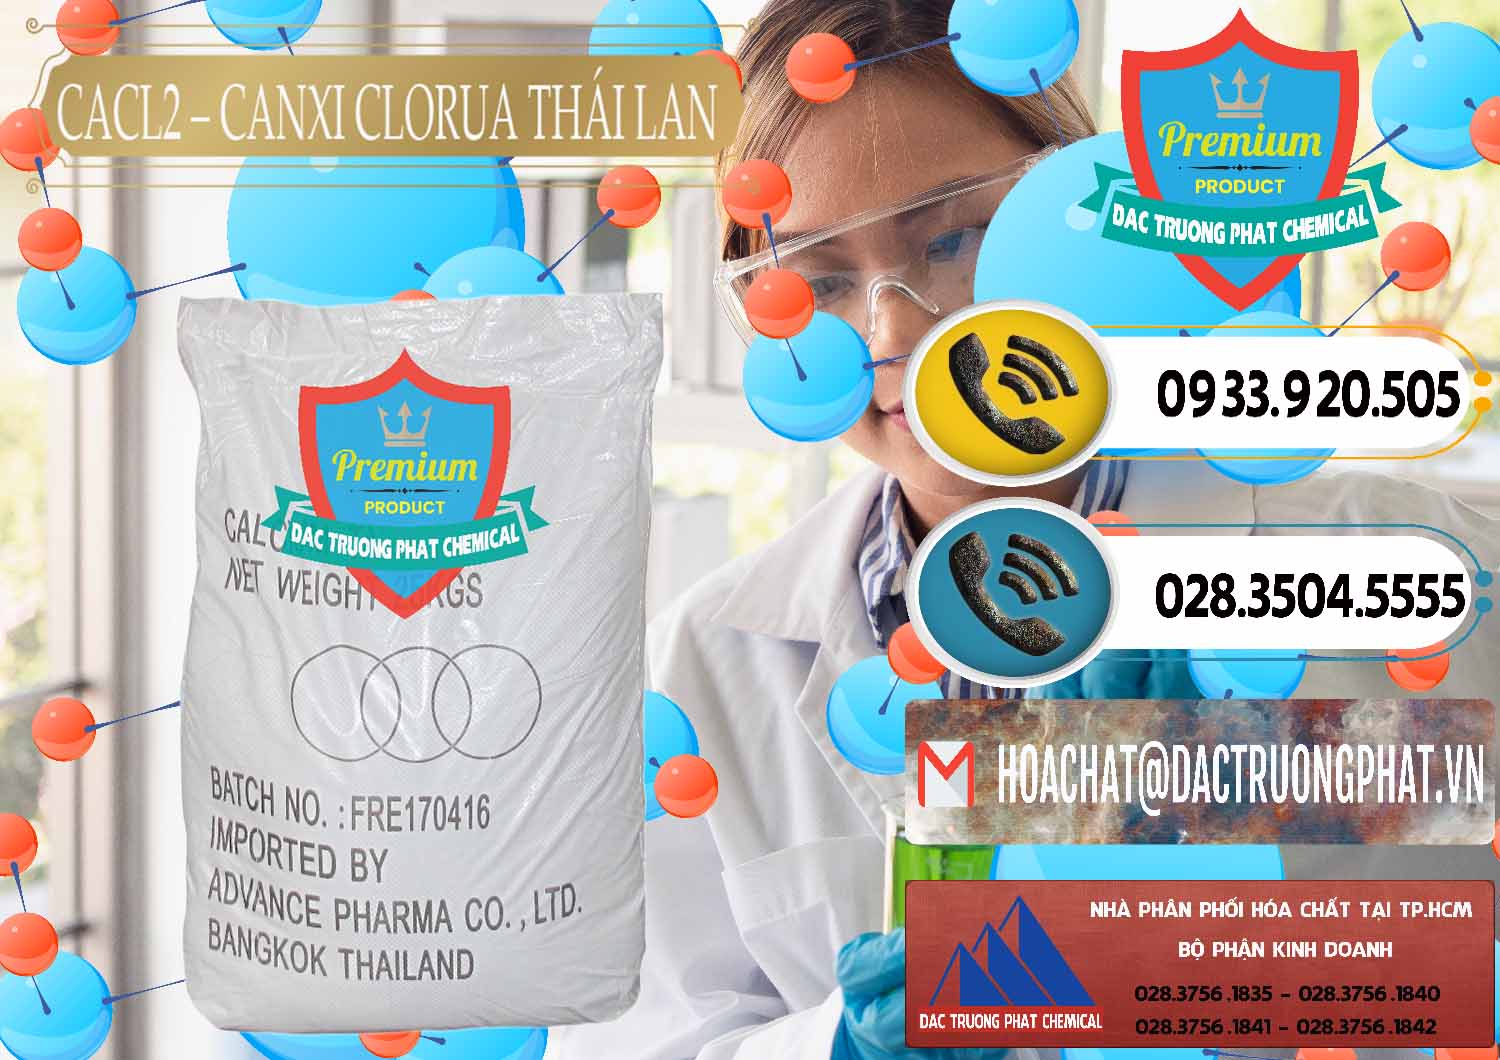 Nhập khẩu và bán CaCl2 – Canxi Clorua 96% Thái Lan - 0042 - Nơi chuyên nhập khẩu & phân phối hóa chất tại TP.HCM - hoachatdetnhuom.vn